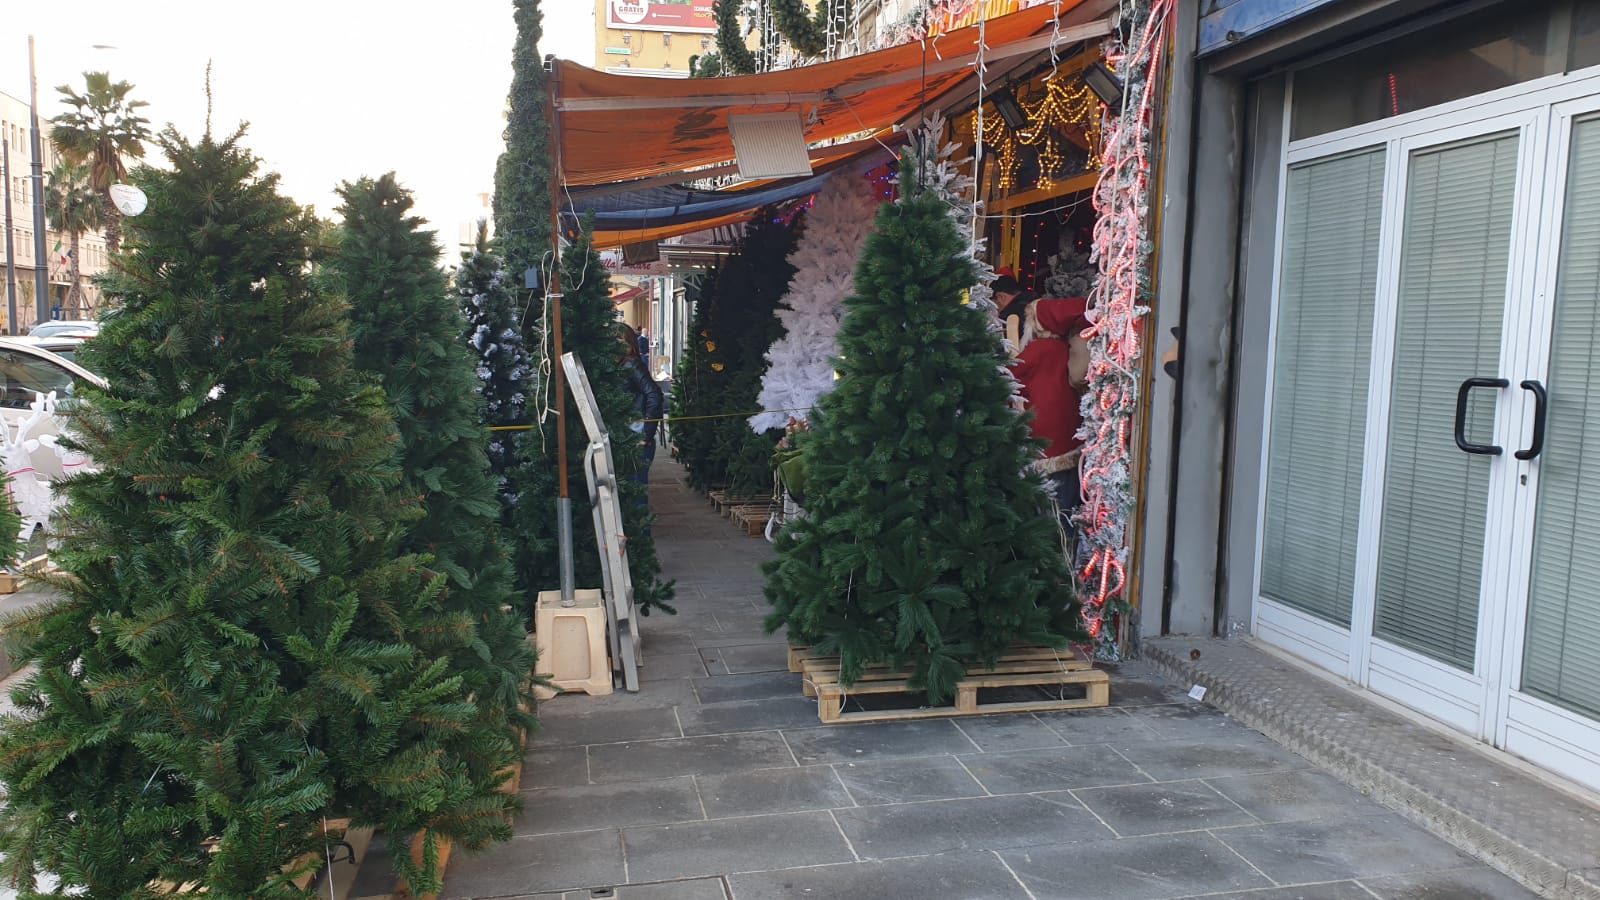 Aveva occupato un intero marciapiede per vendere alberi di Natale